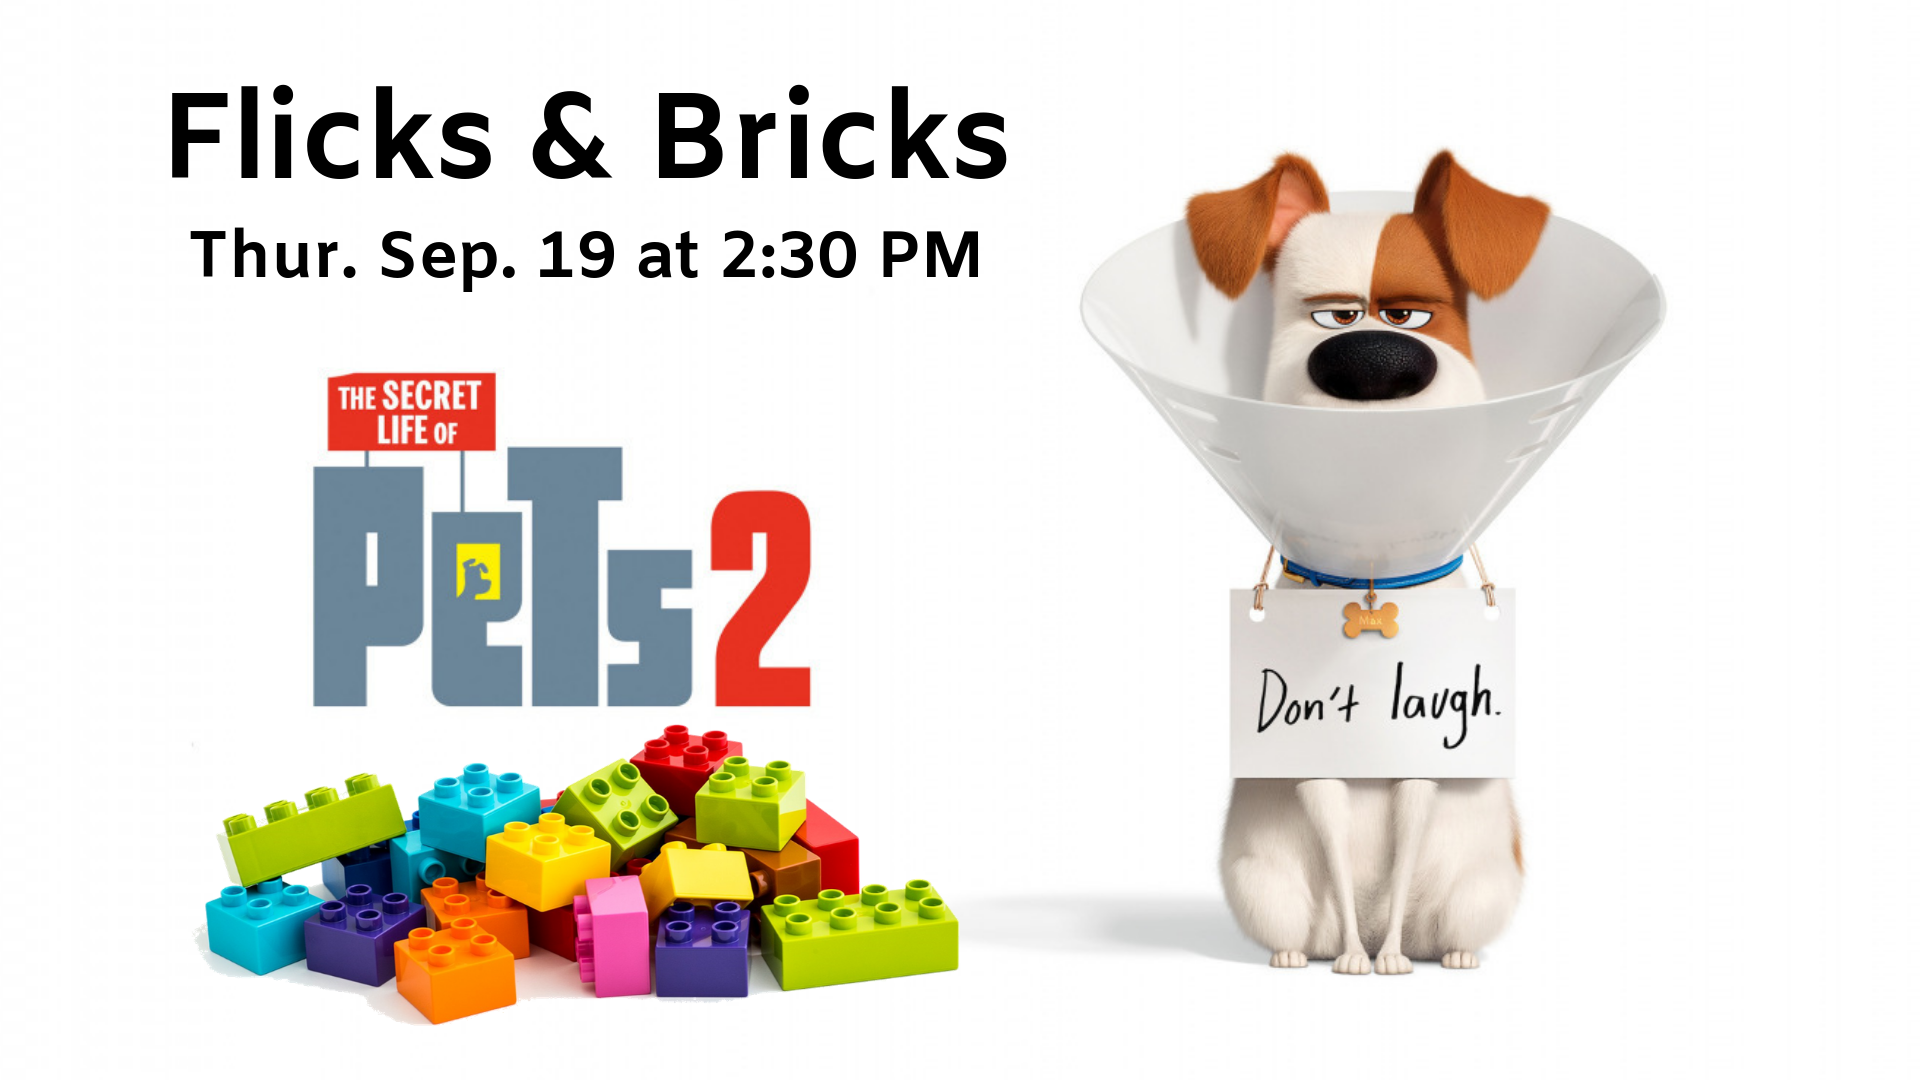 Flicks & Bricks: Pets 2